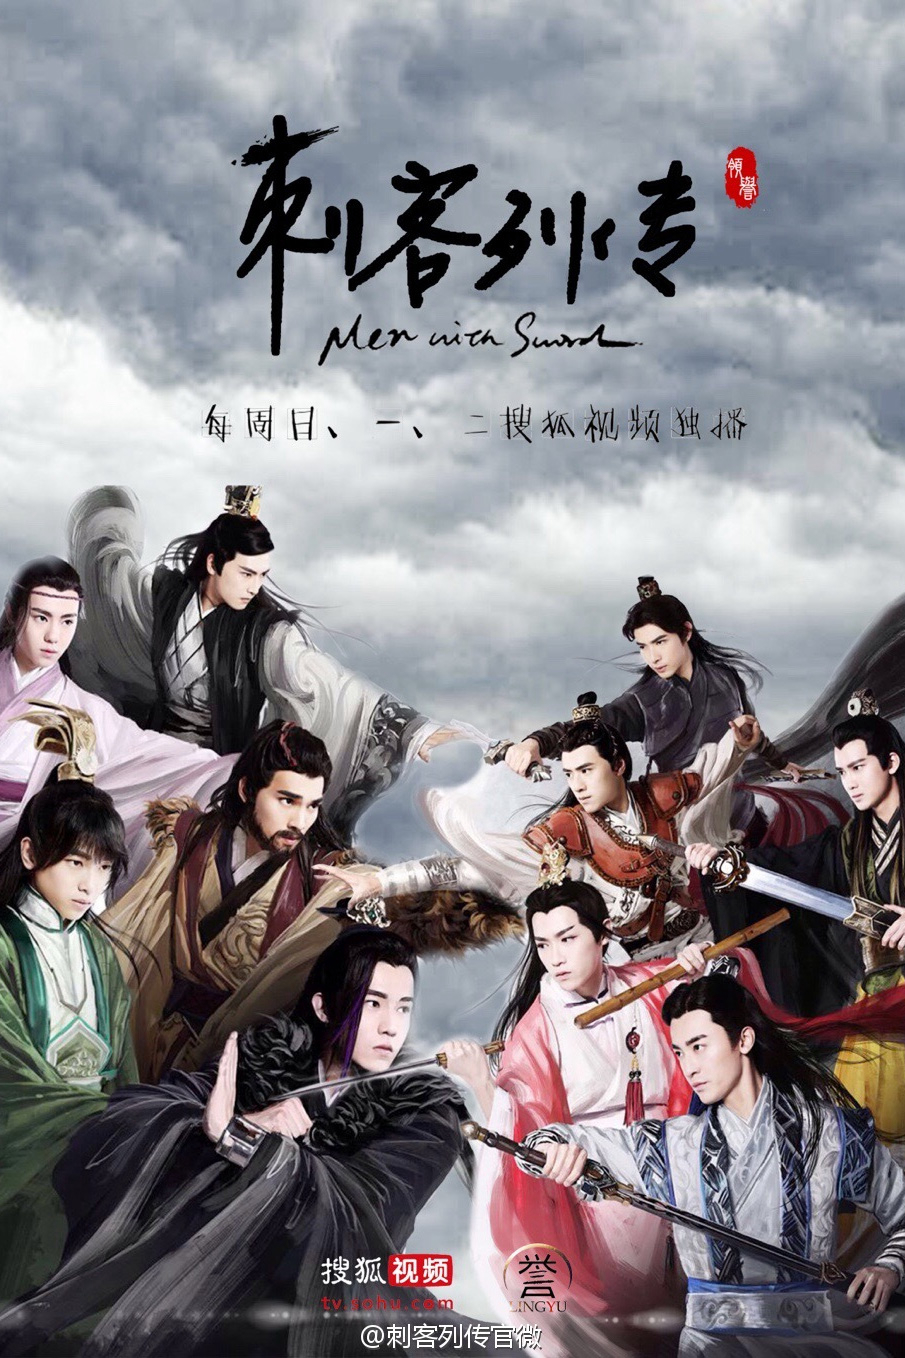 Poster Phim Thích Khách Liệt Truyện (Men with Sword)